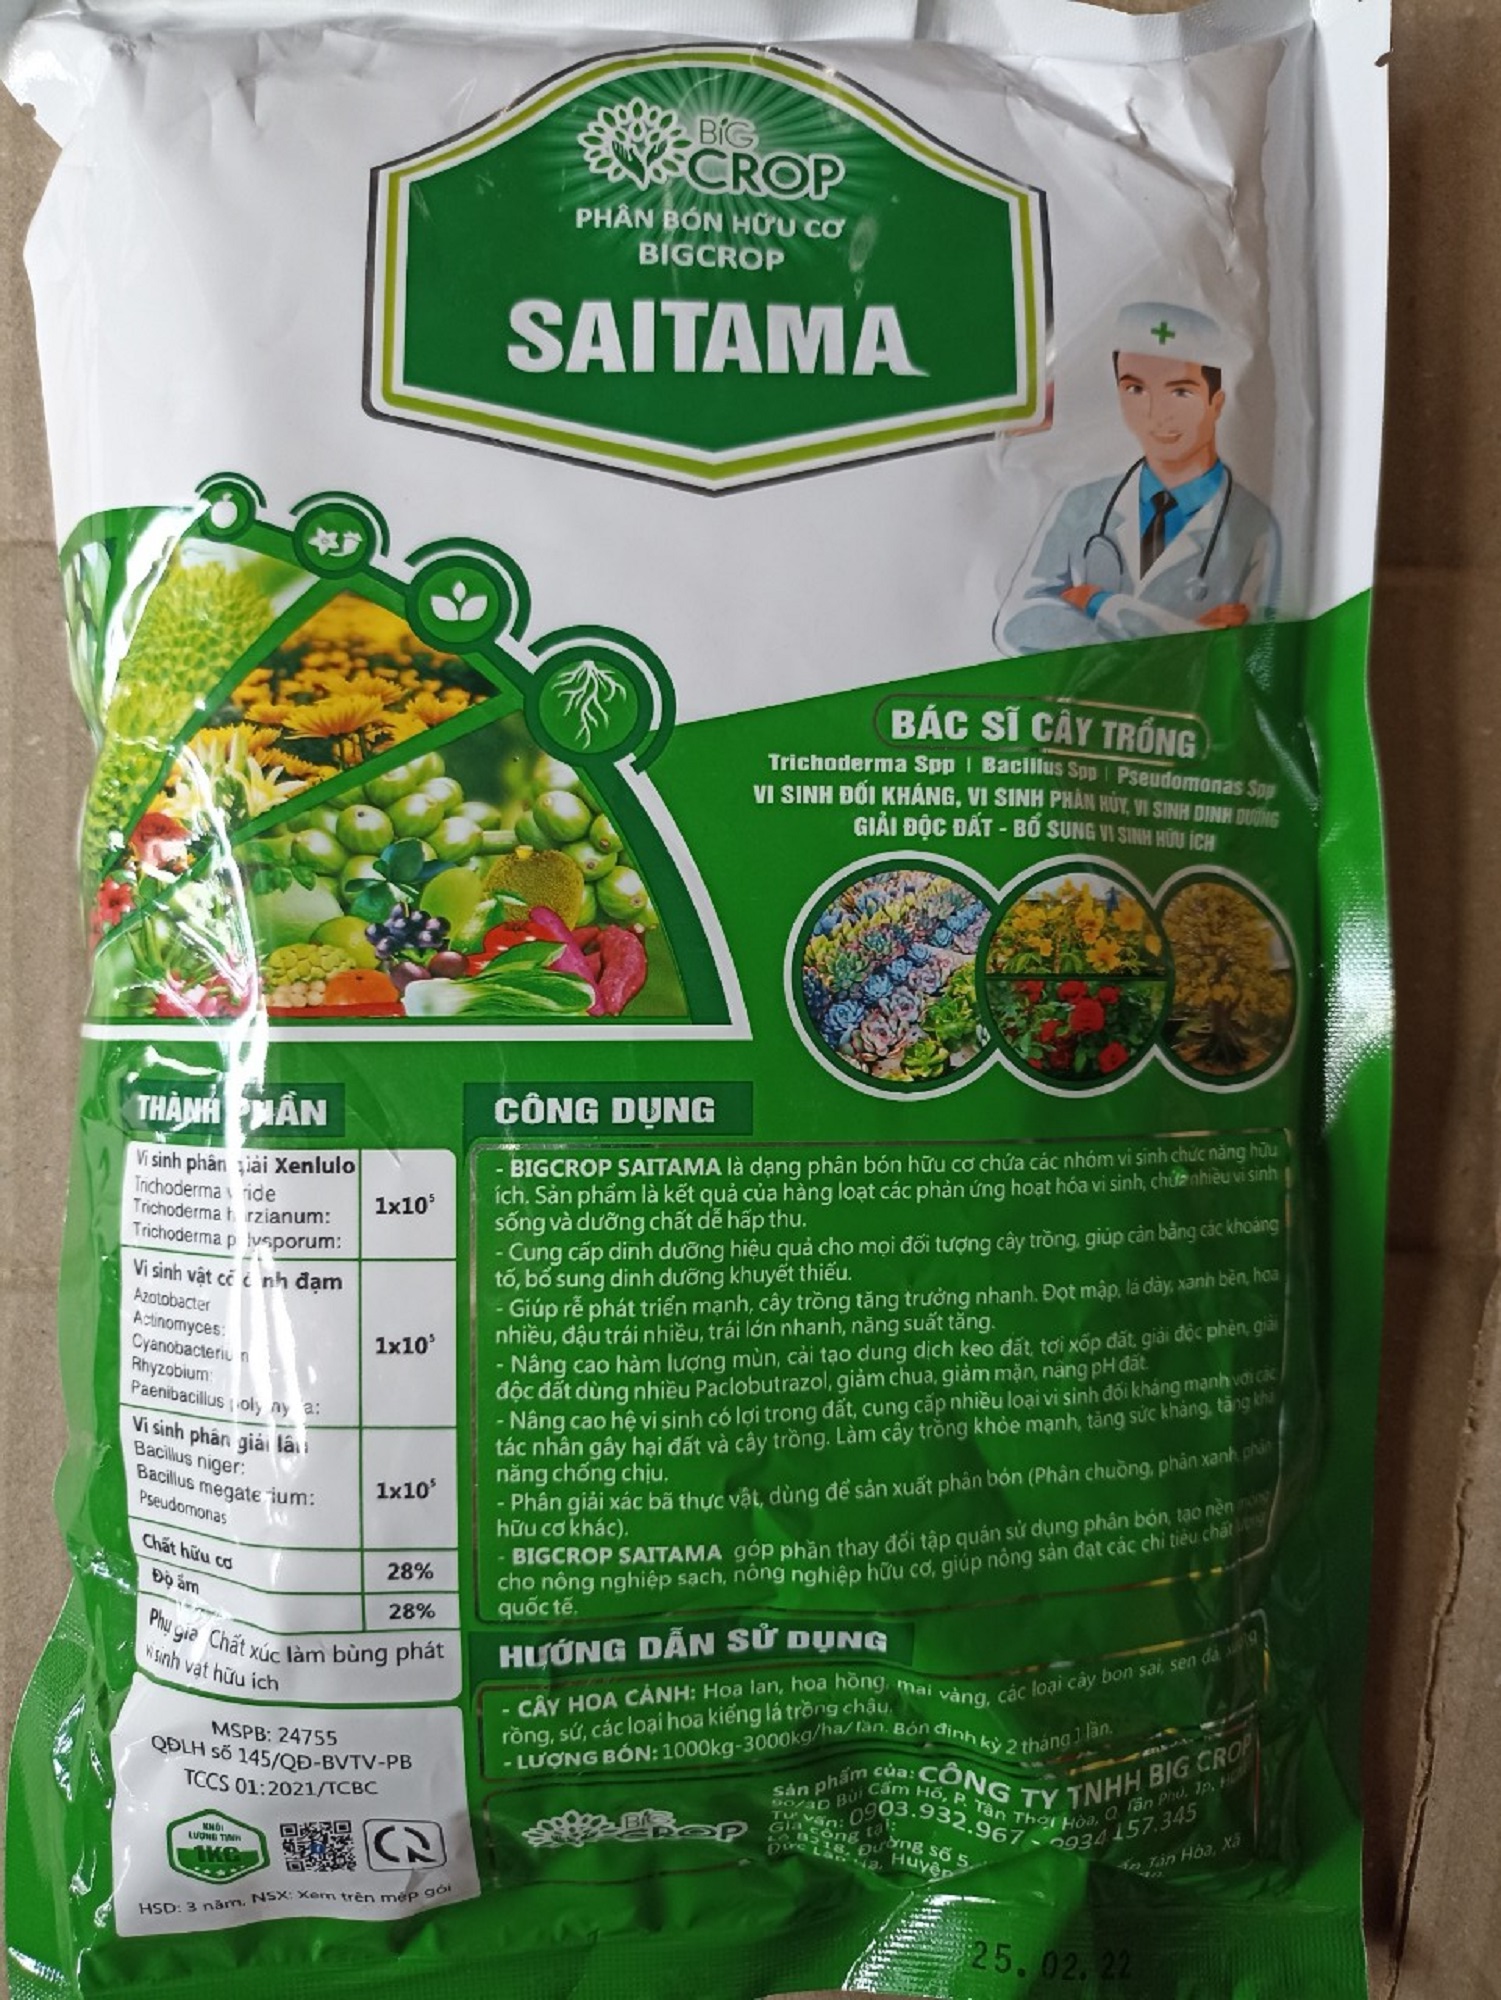 Phân bón hữu cơ vi sinh SAITAMA - Bác sỹ cây trồng - gói 1 kg